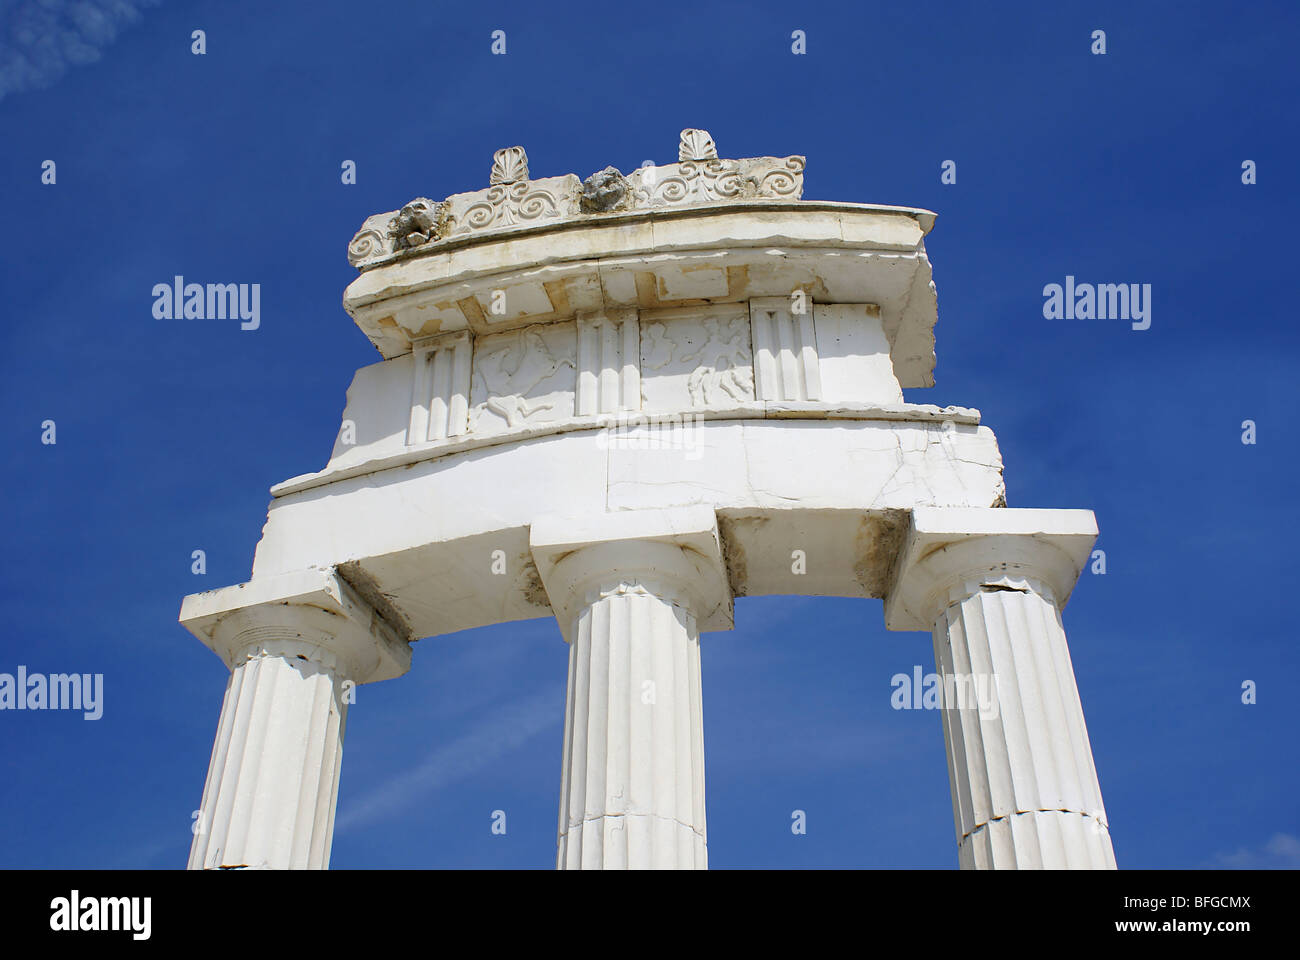 L'architecture grecque avec du marbre blanc Banque D'Images